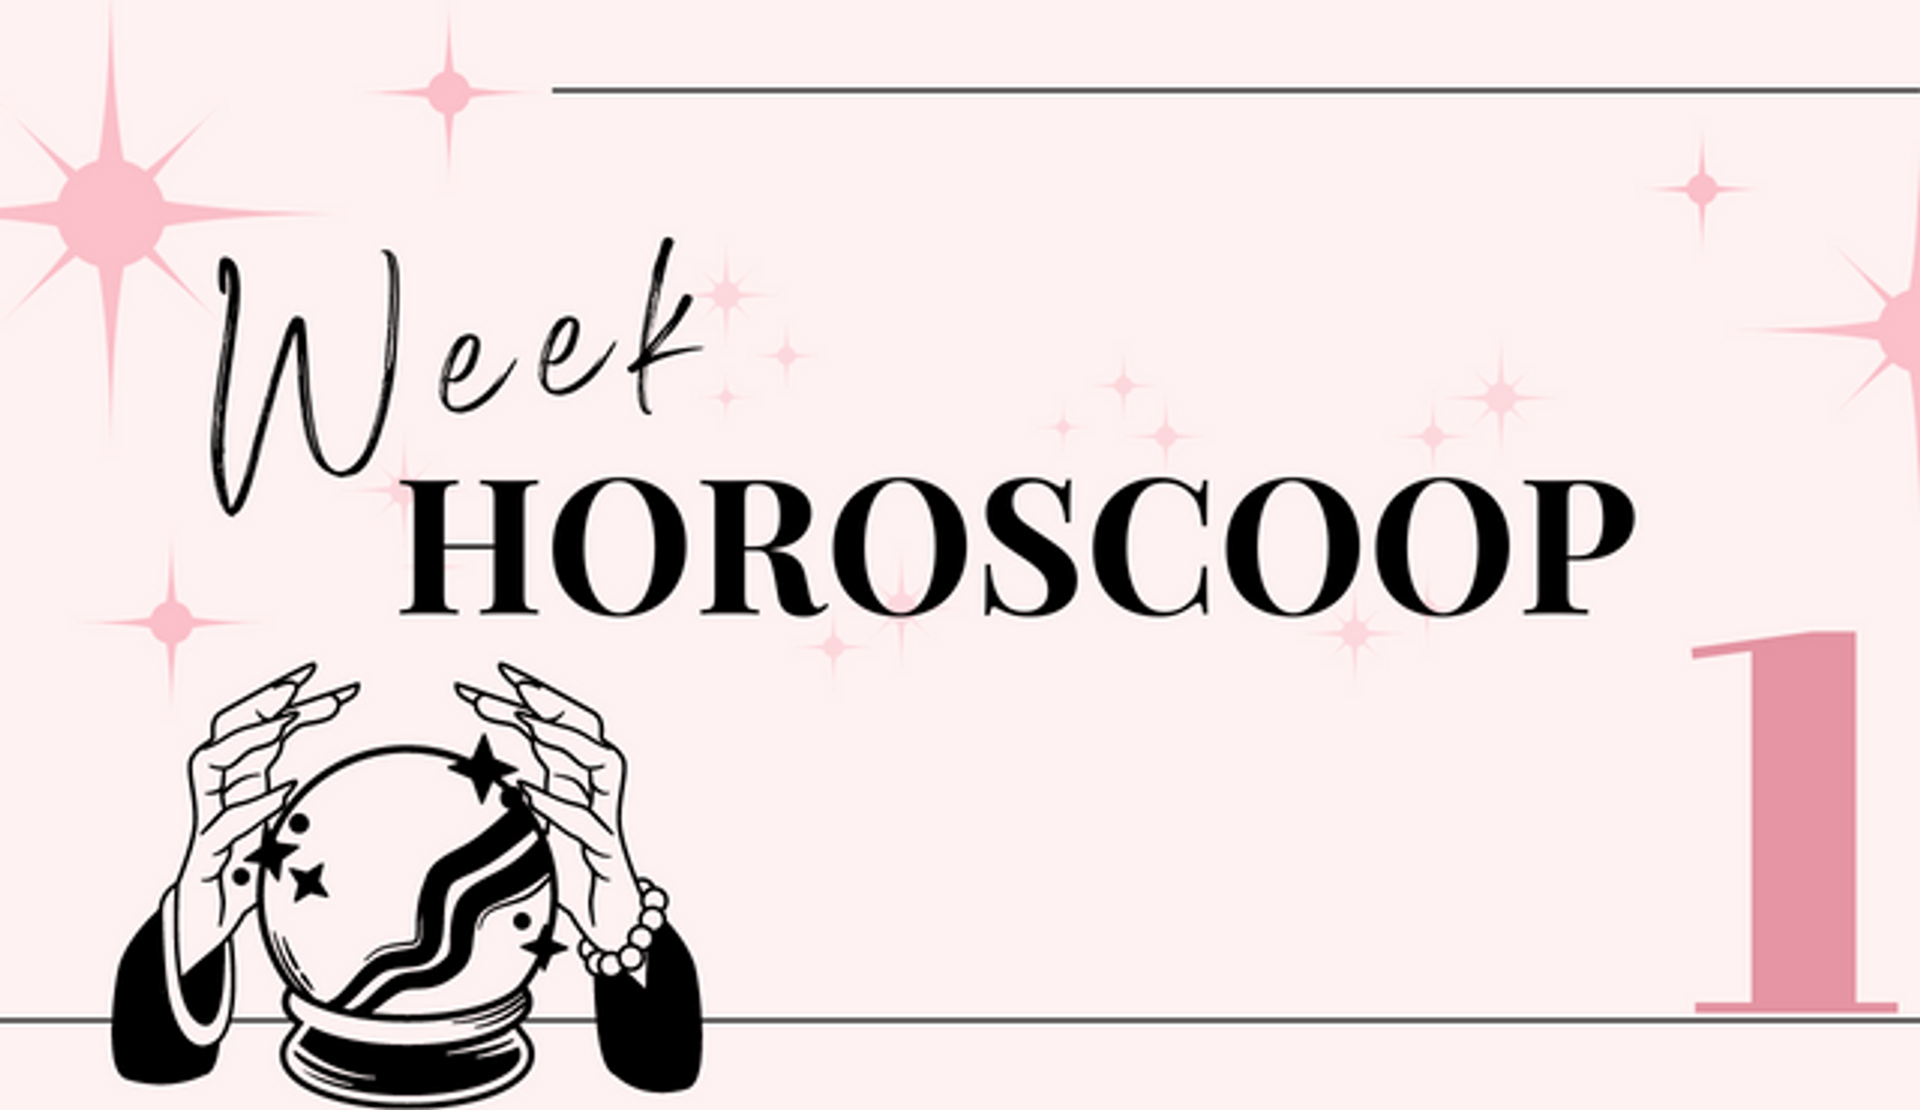 weekhoroscoop-week-1